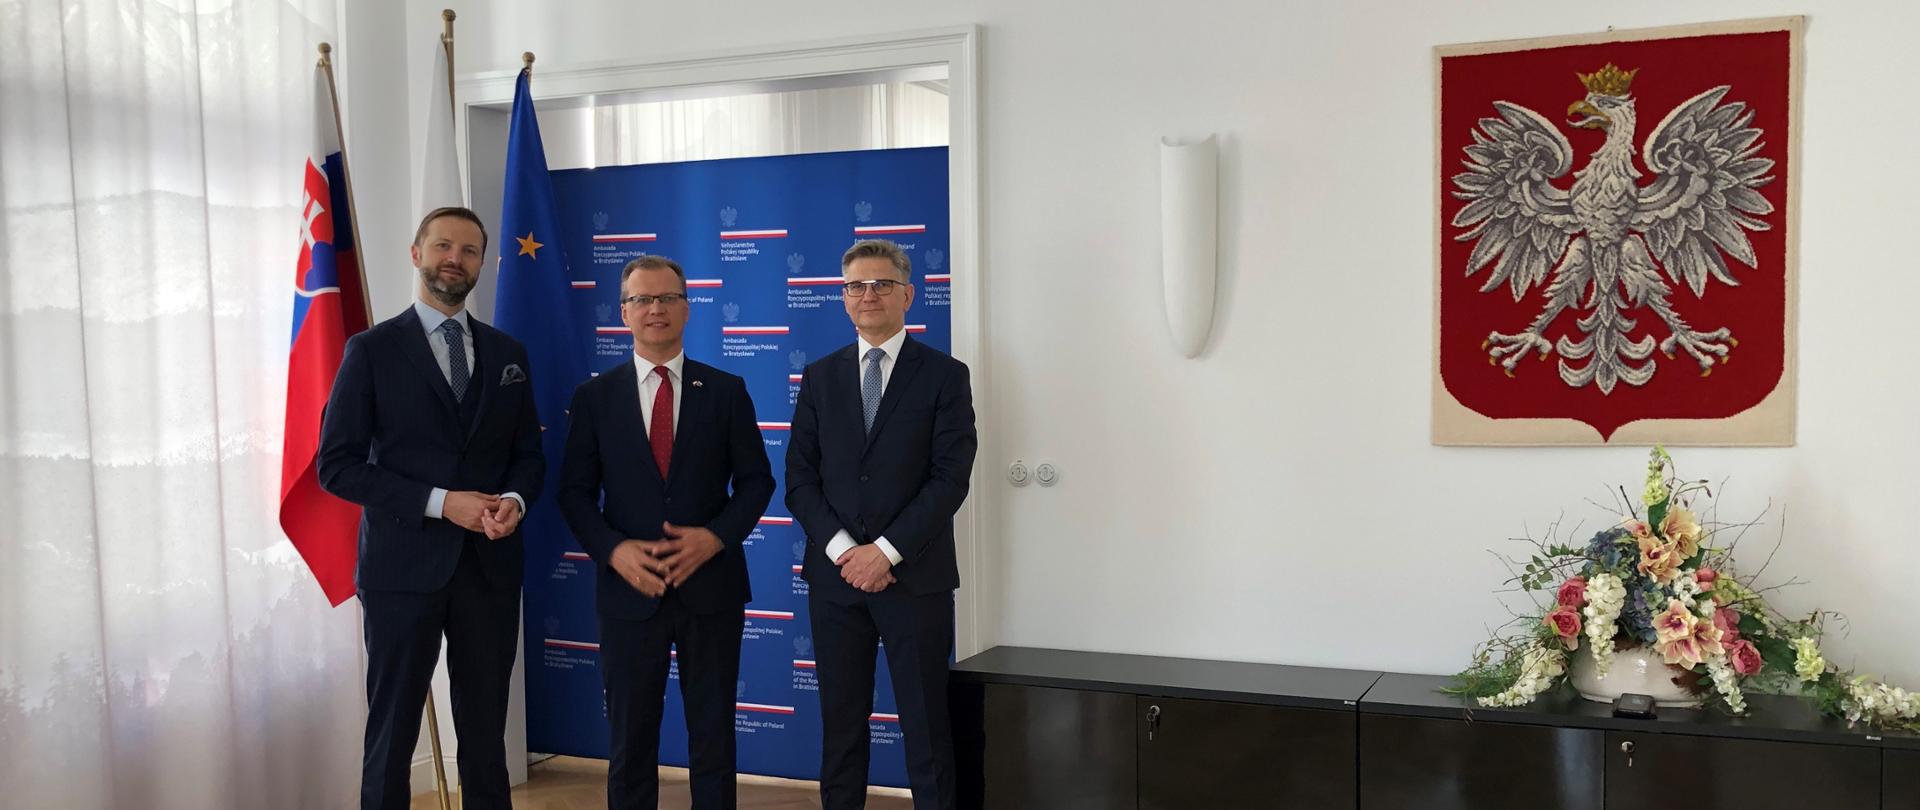 Tomasz Wiatrak, Marek Gieroń i ambasador Krzysztof Strzałka stoją na tle flag Polski, Słowacji i UE